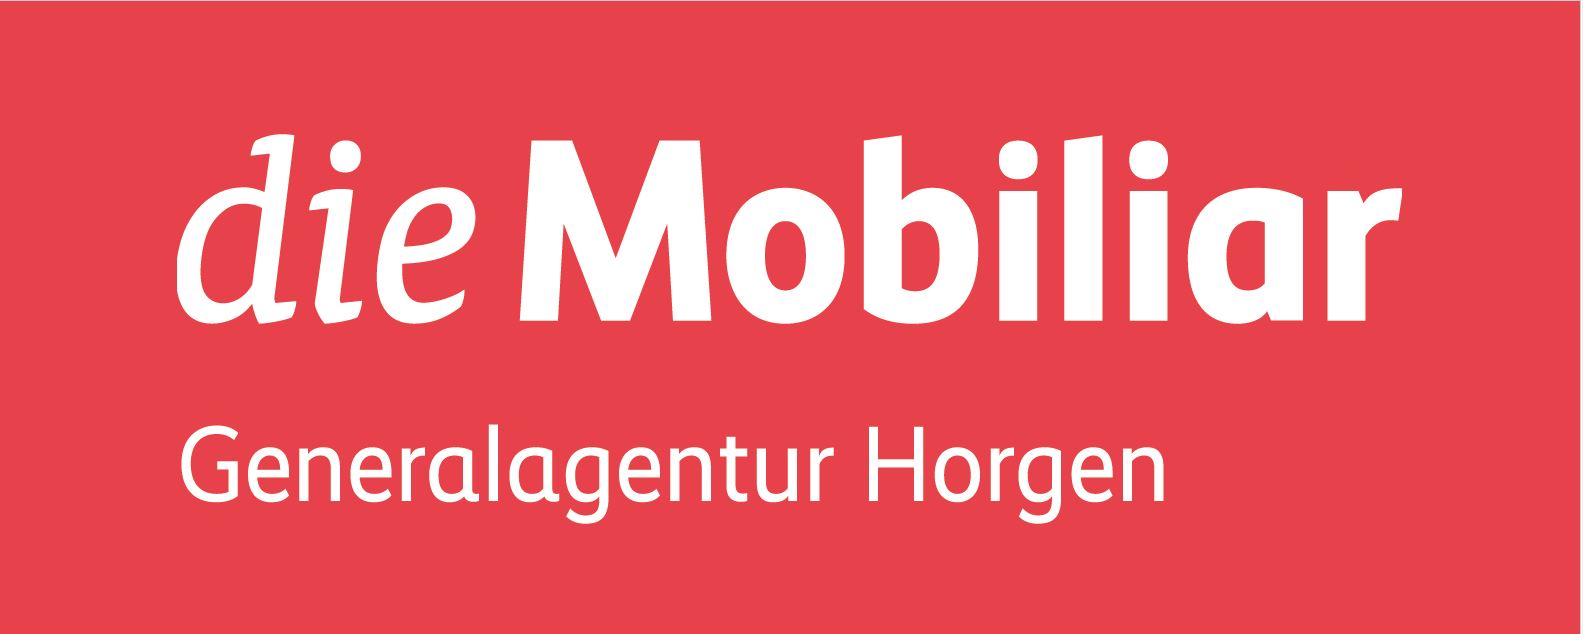 Mobi Horgen